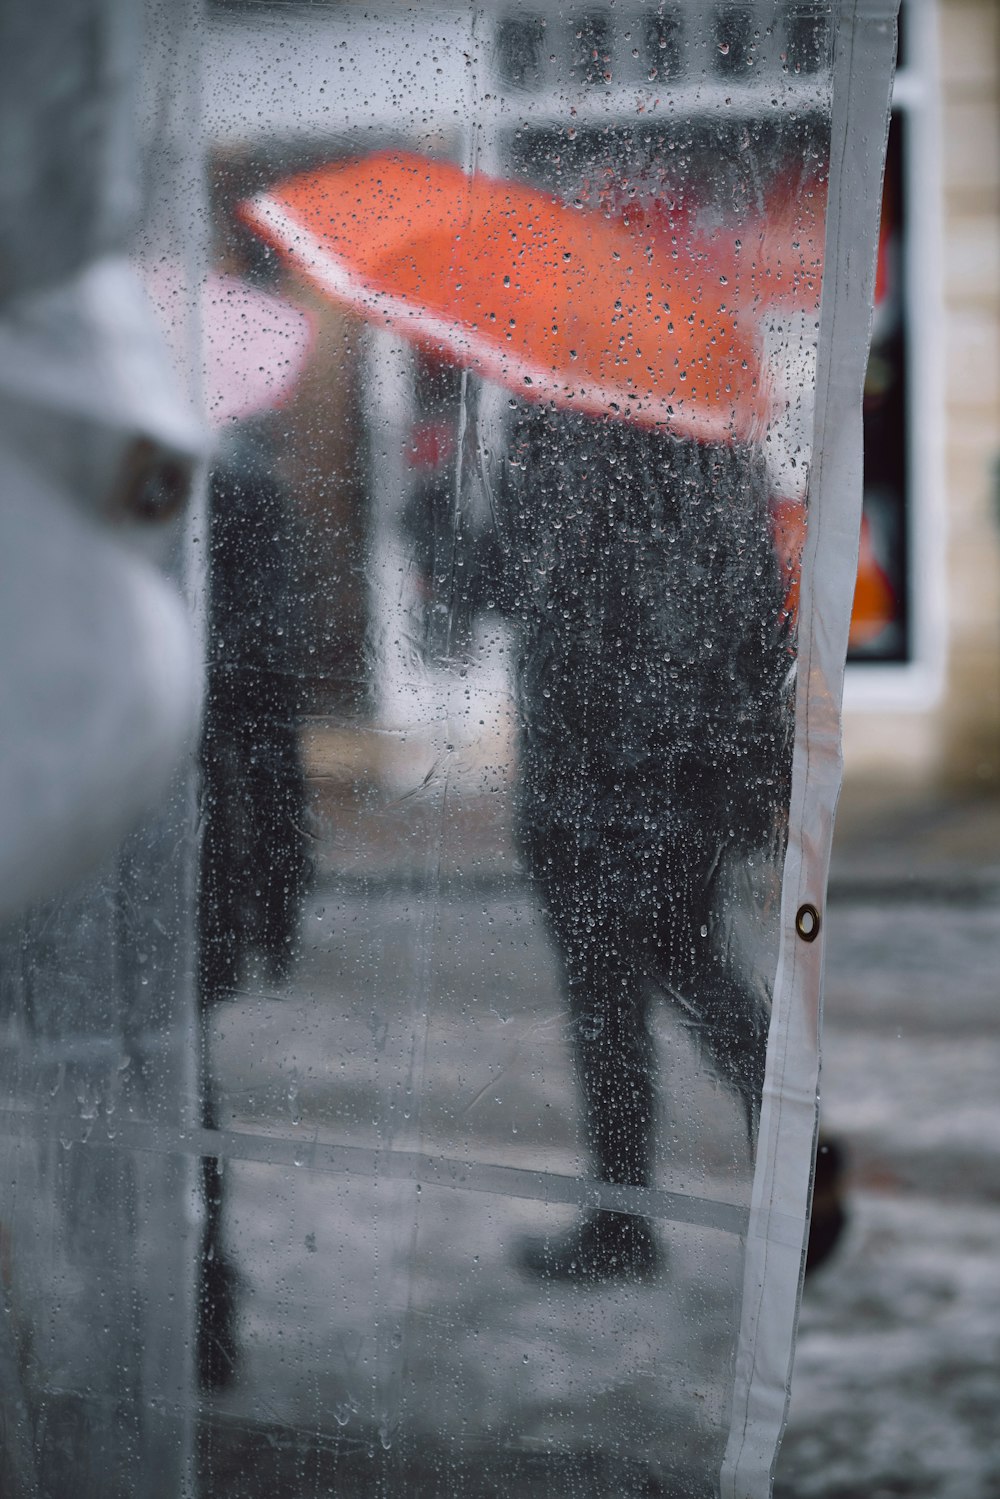 Manteau en plastique transparent avec des gouttes d’eau montrant des personnes utilisant un parapluie